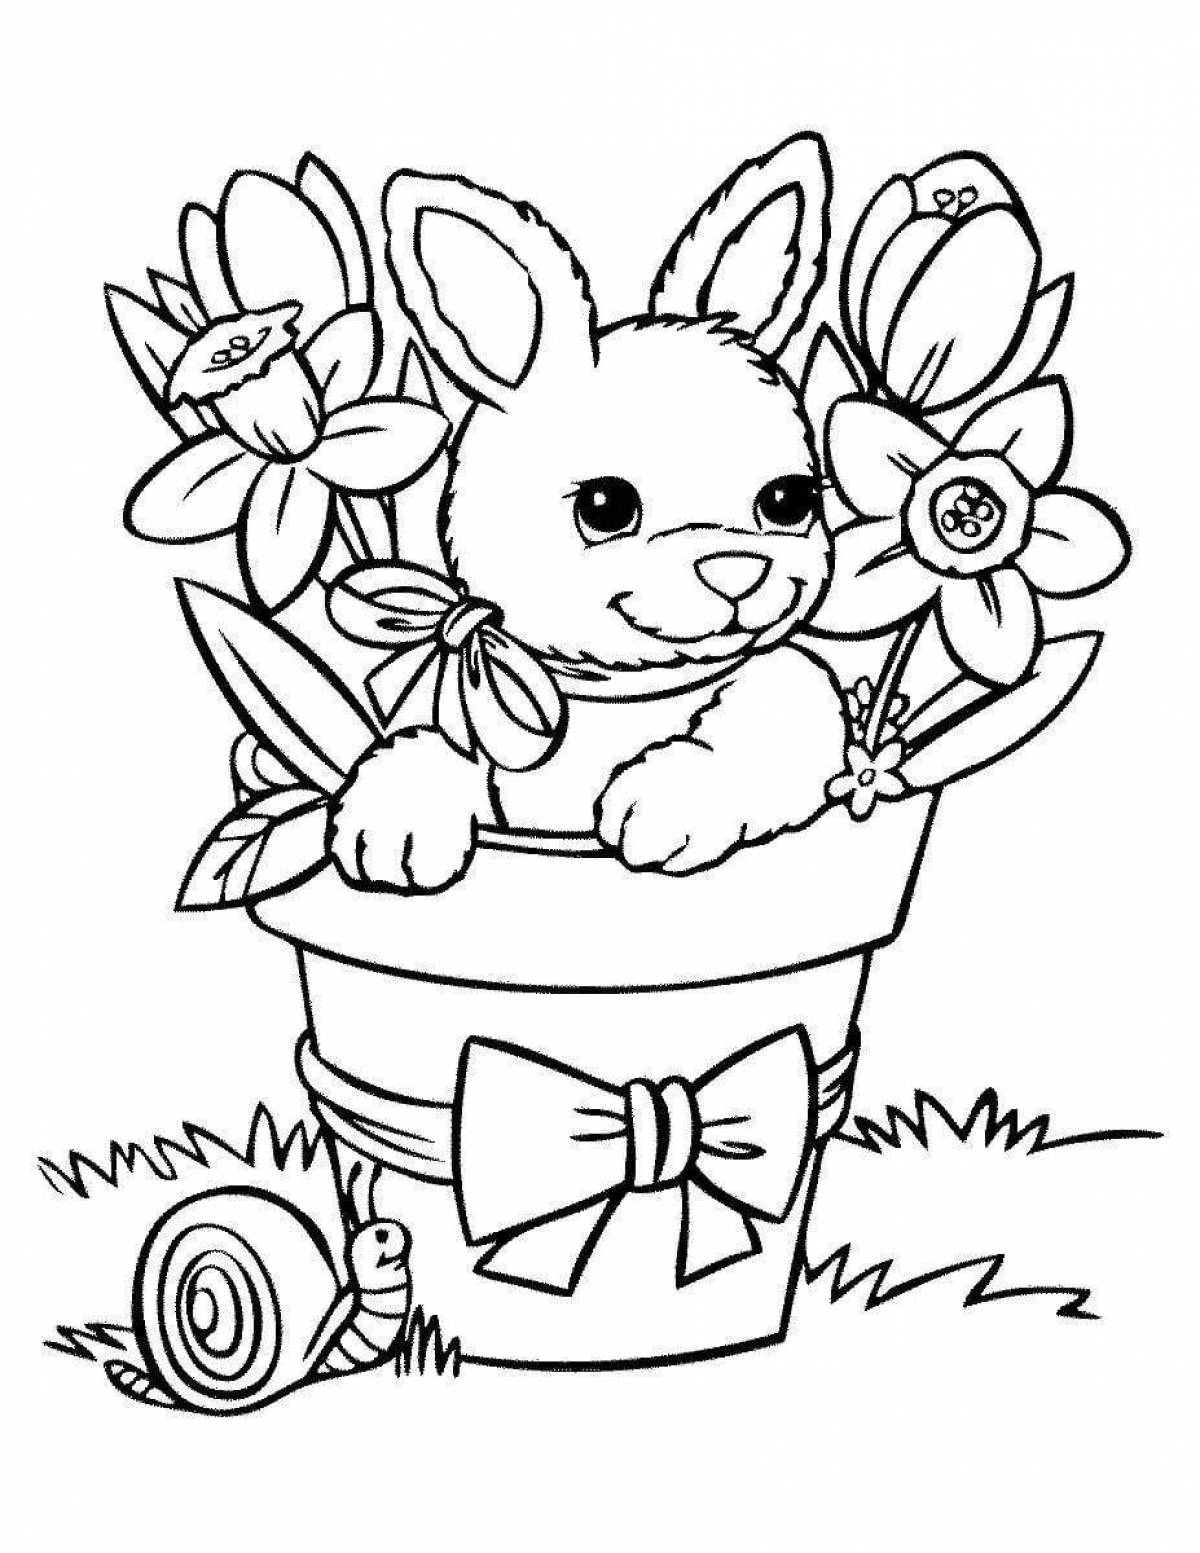 Раскраска сказочный заяц для детей 6-7 лет